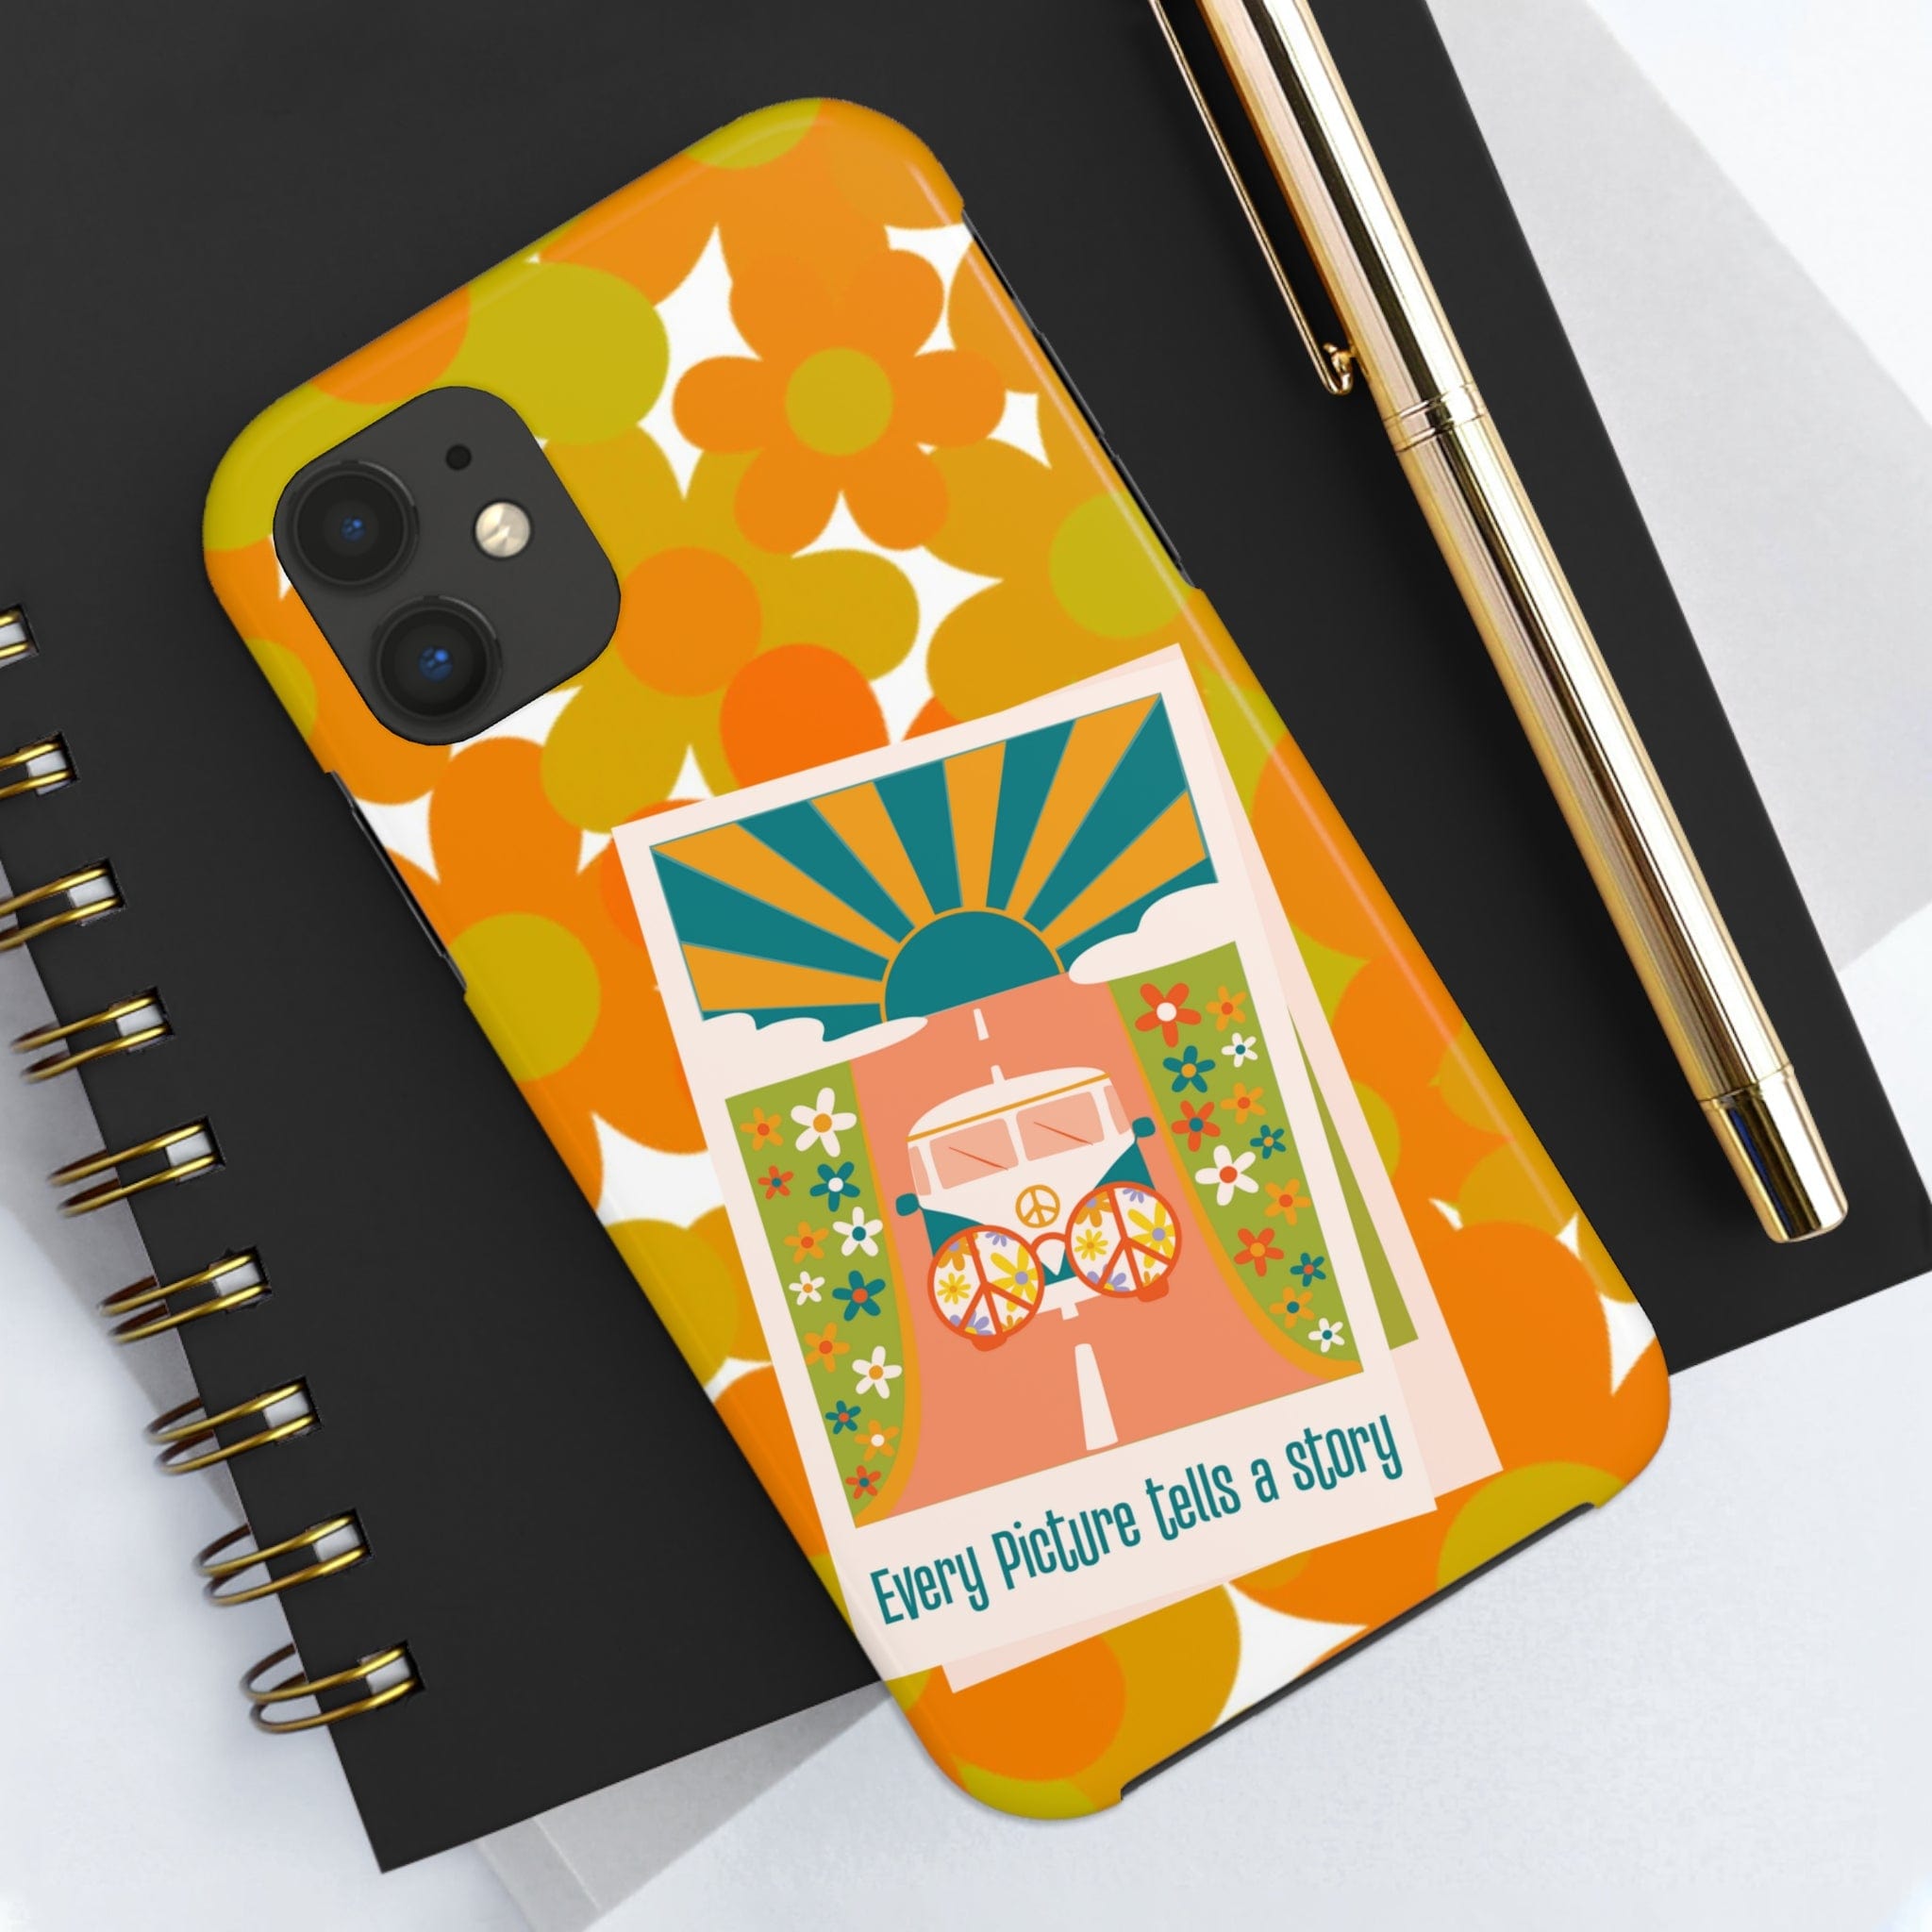 Retro Phone Case, Orange Flower Power, Polariod Picture, Mod Smart Phone Tough Phone Cases Phone Case iPhone 11